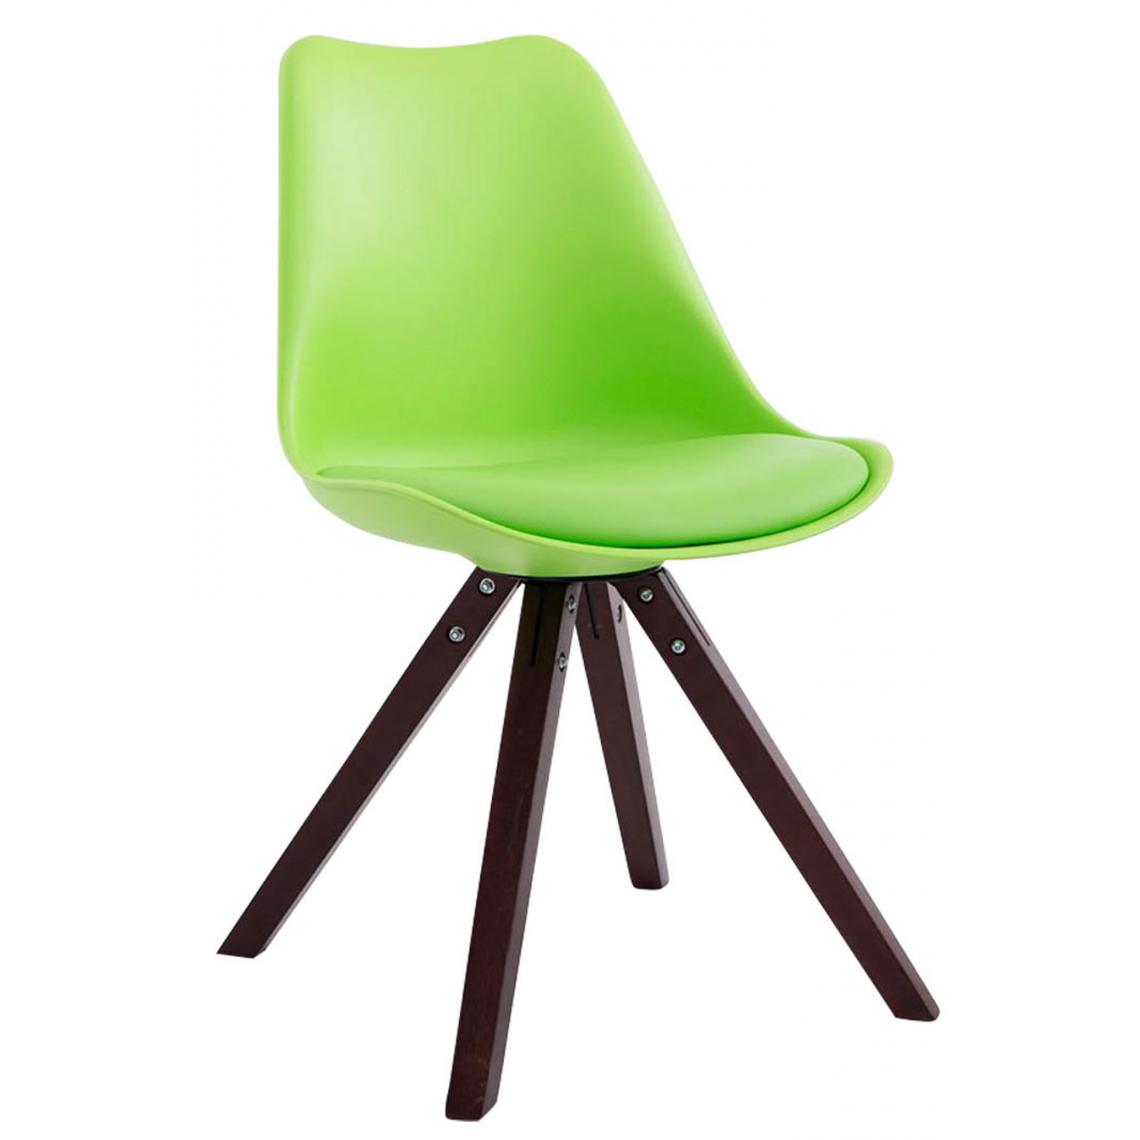 Icaverne - Magnifique Chaise visiteur selection Katmandou cuir synthétique carré cappuccino (chêne) couleur vert - Chaises